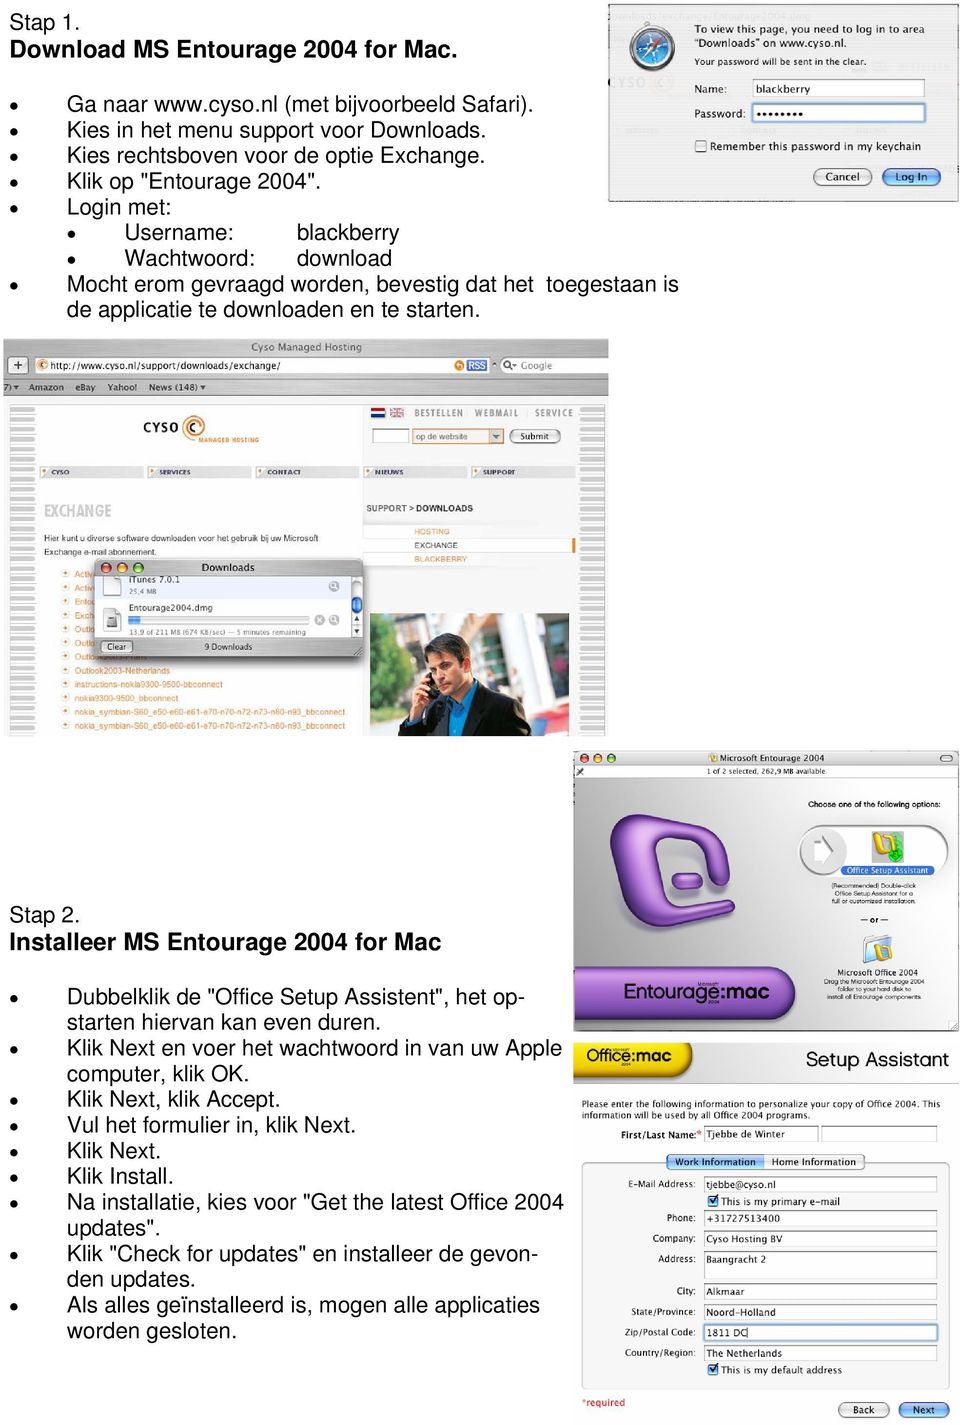 Installeer MS Entourage 2004 for Mac Dubbelklik de "Office Setup Assistent", het opstarten hiervan kan even duren. Klik Next en voer het wachtwoord in van uw Apple computer, klik OK.